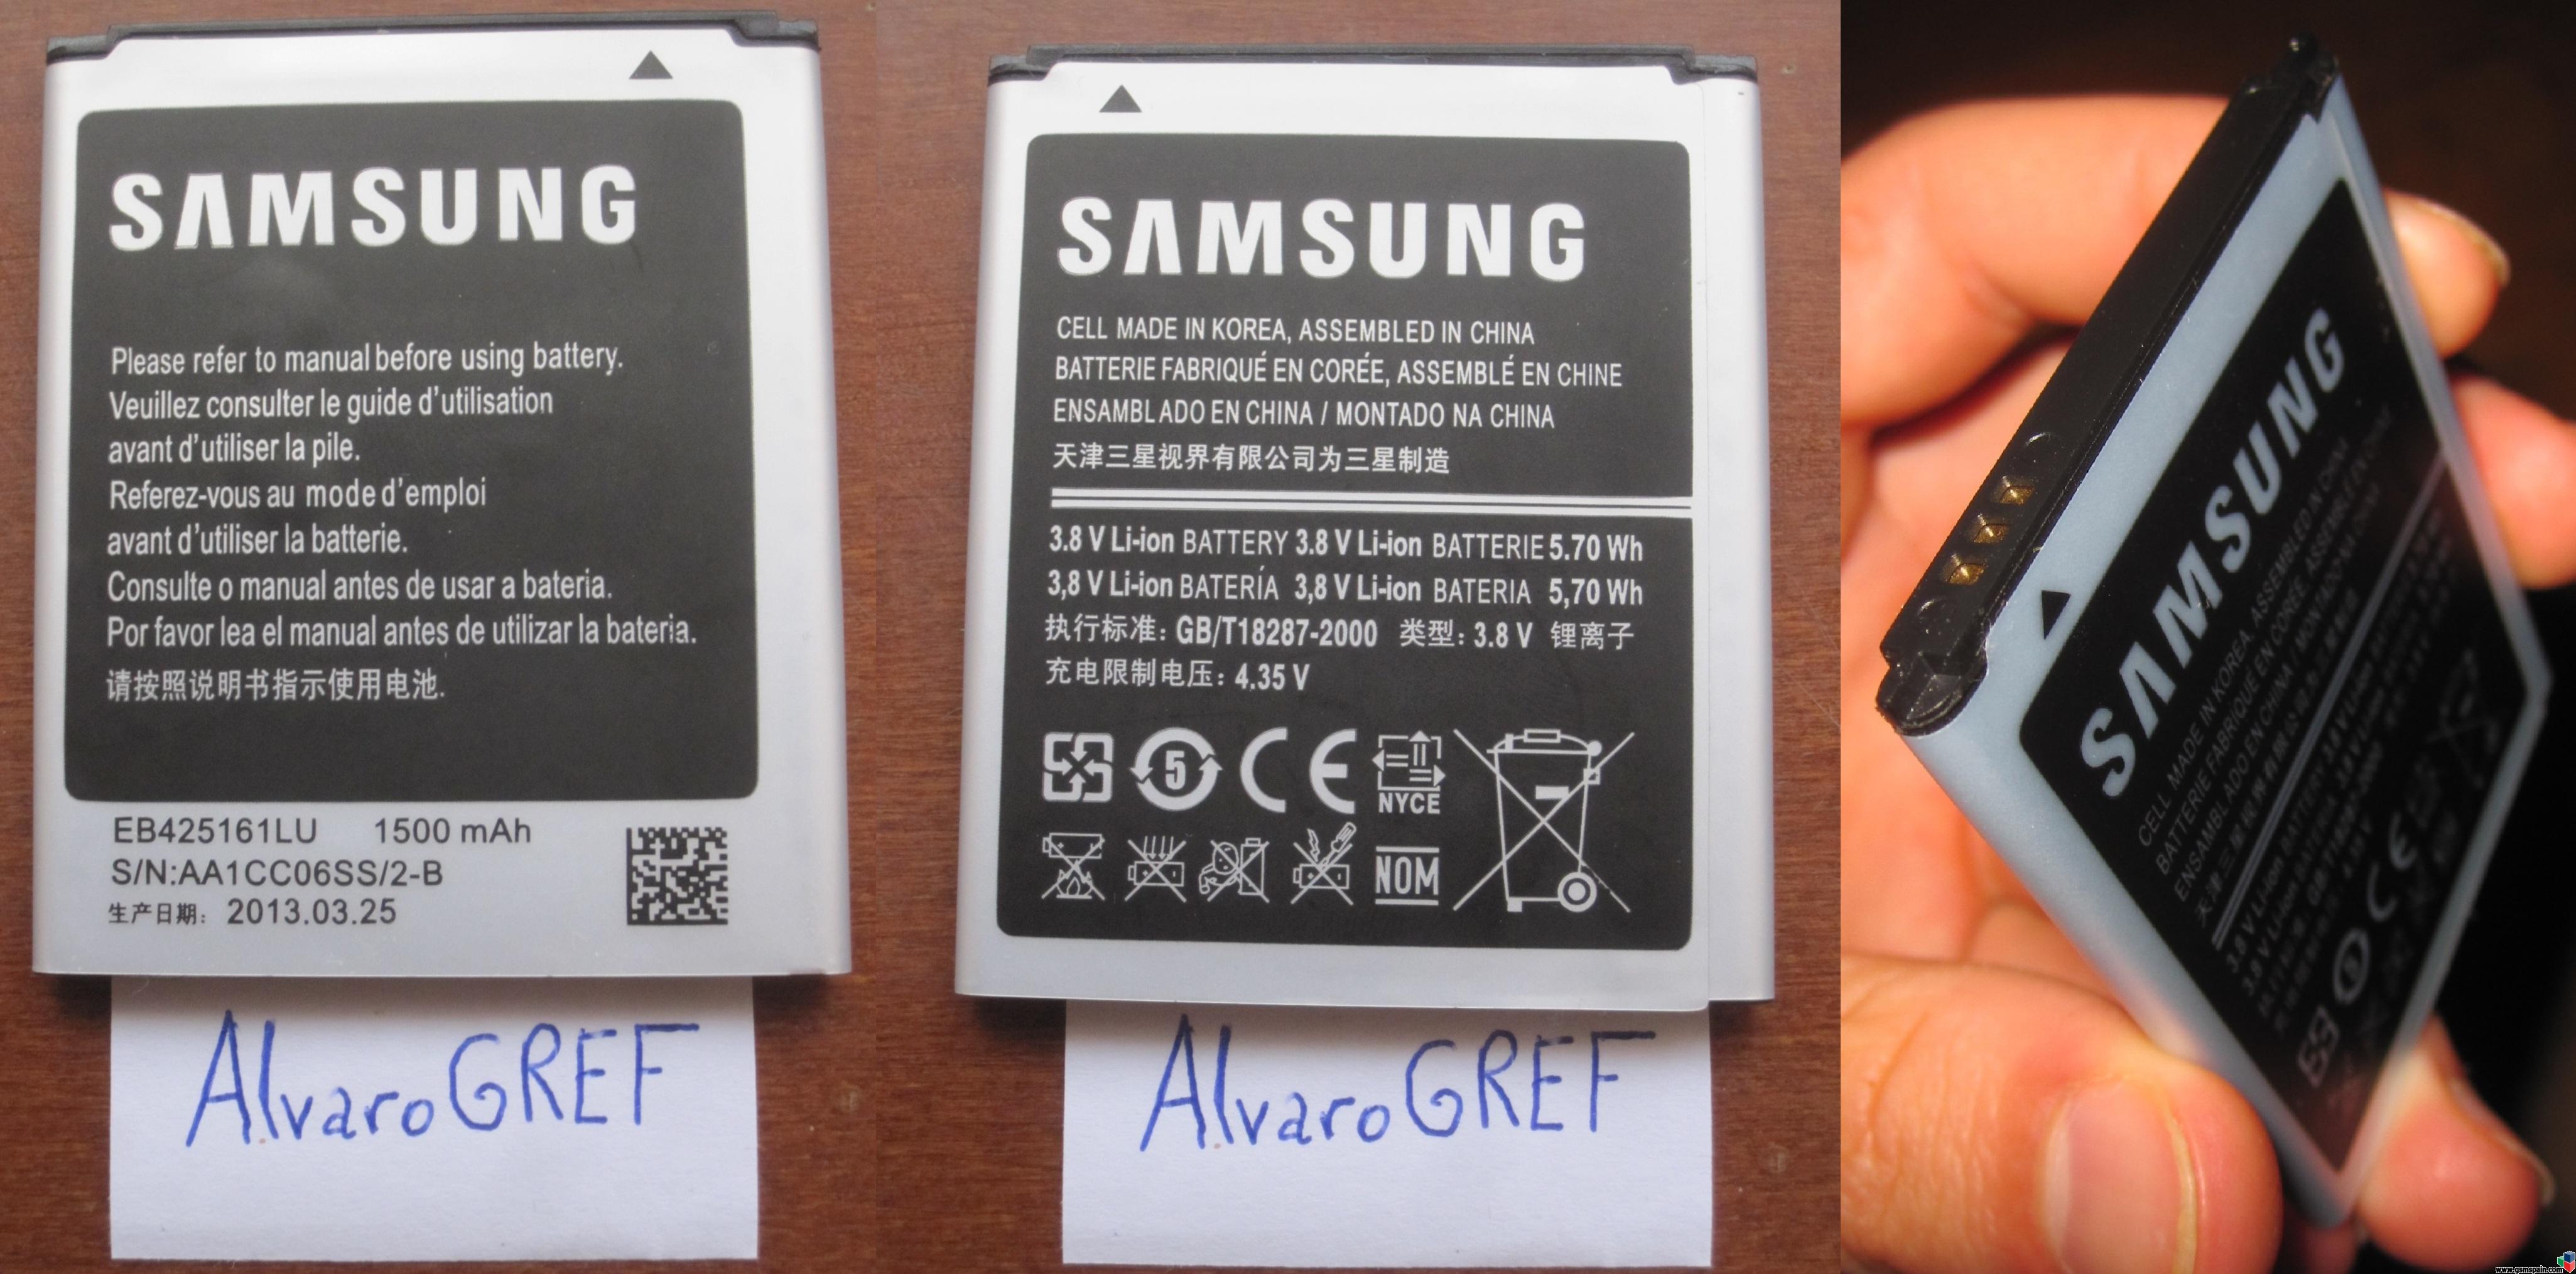 [VENDO] Batera Samsung Galaxy S3 mini, nueva, a estrenar. Regalo protector pantalla.